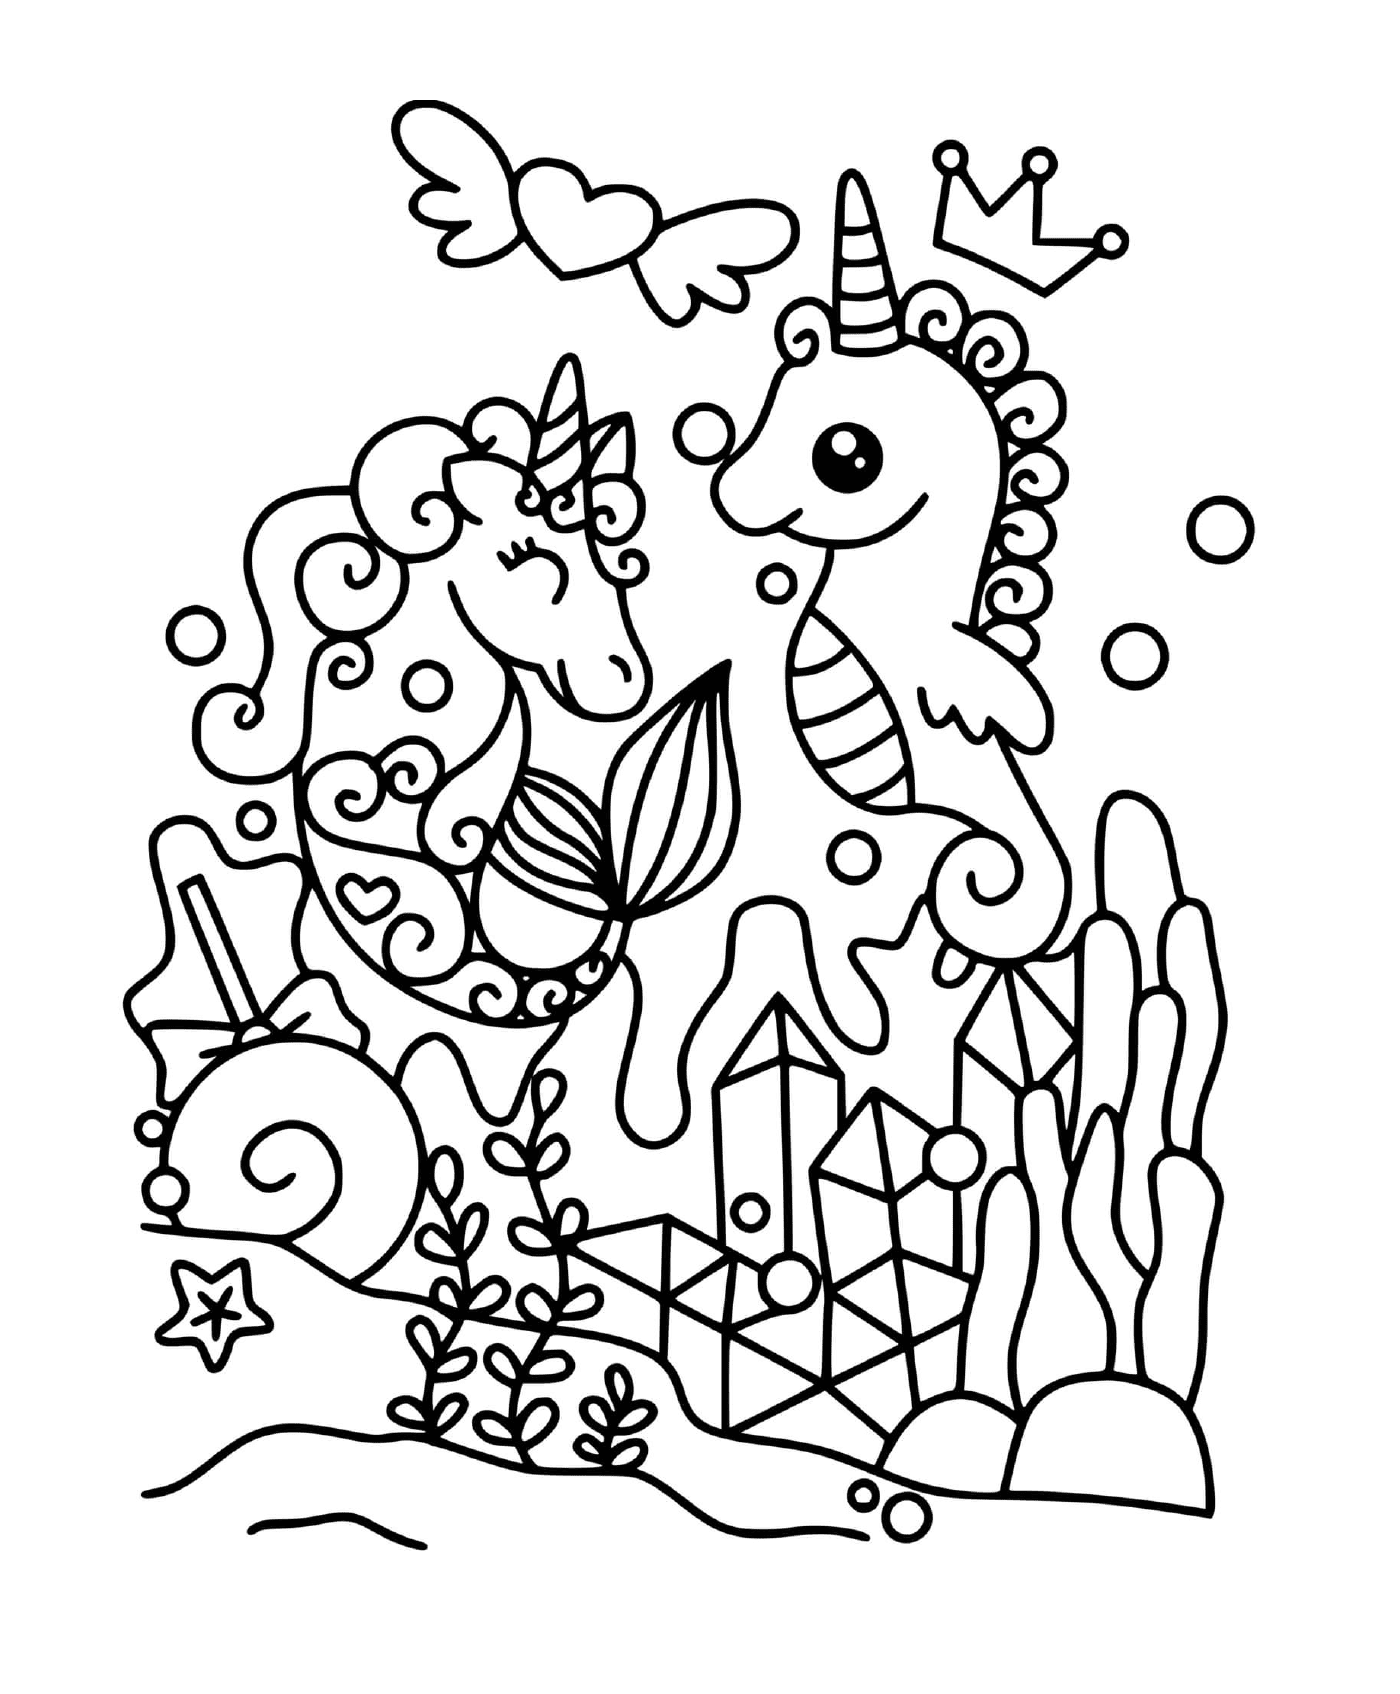  Unicornio bajo agua mágica 